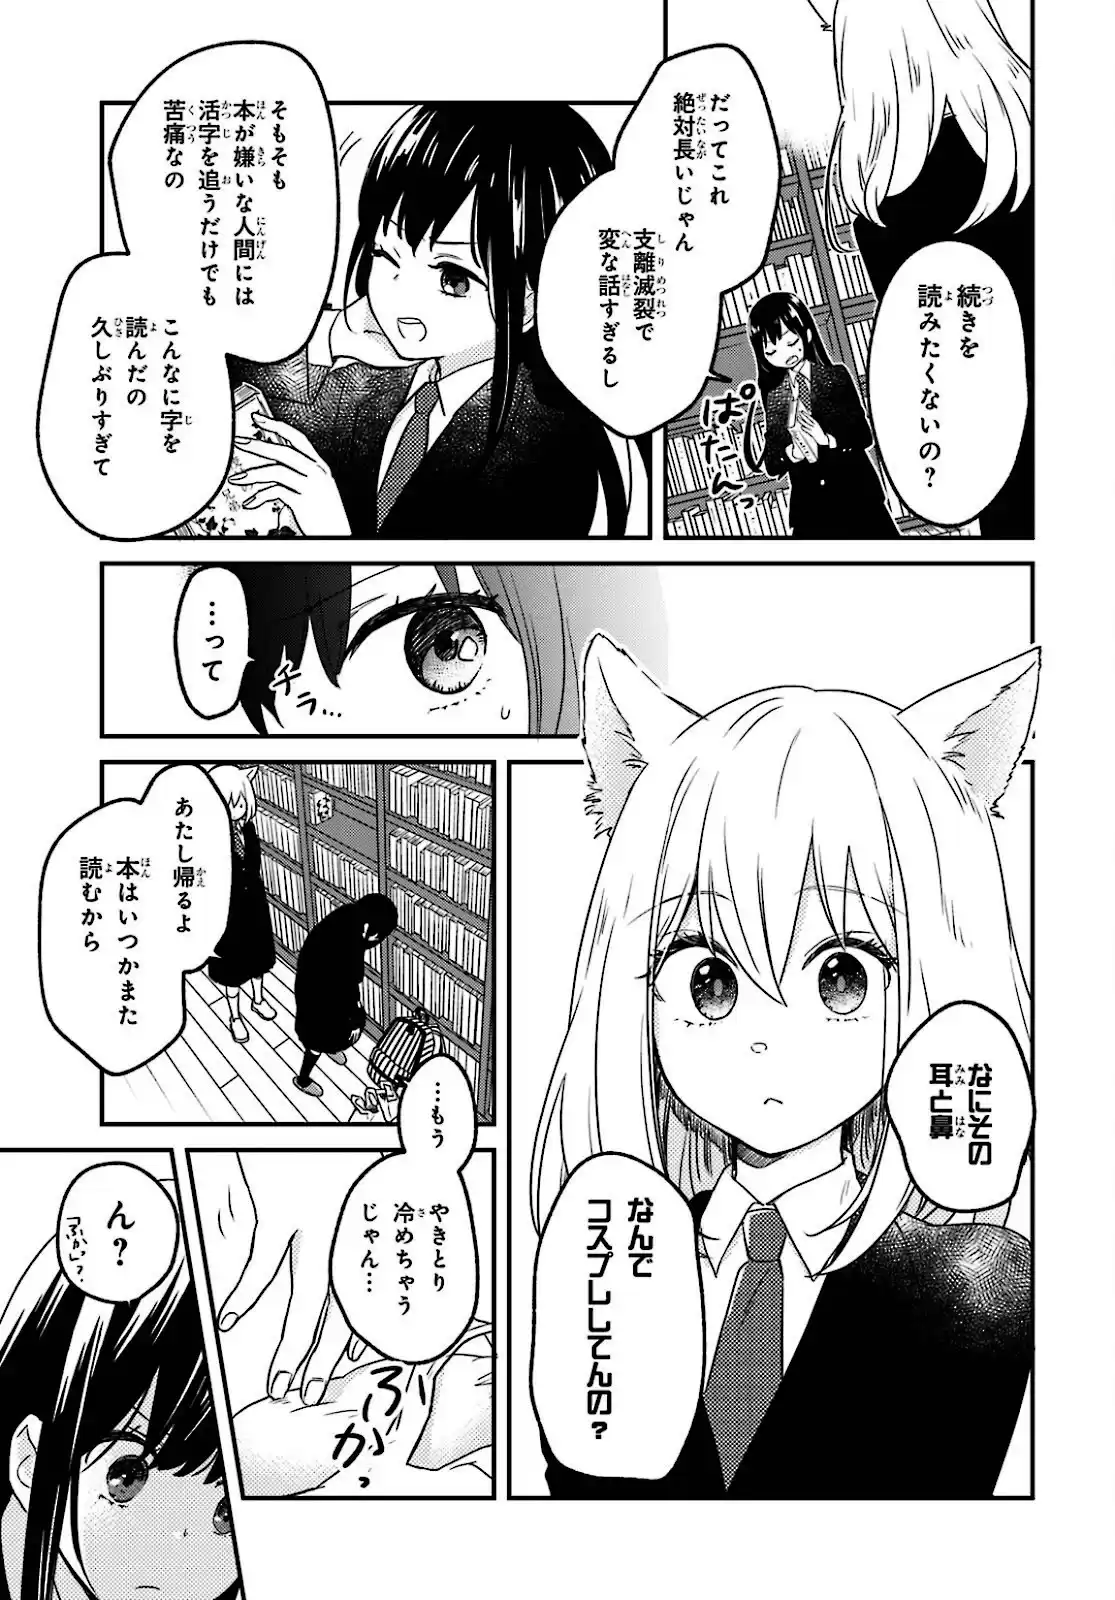 16 Manga R4r